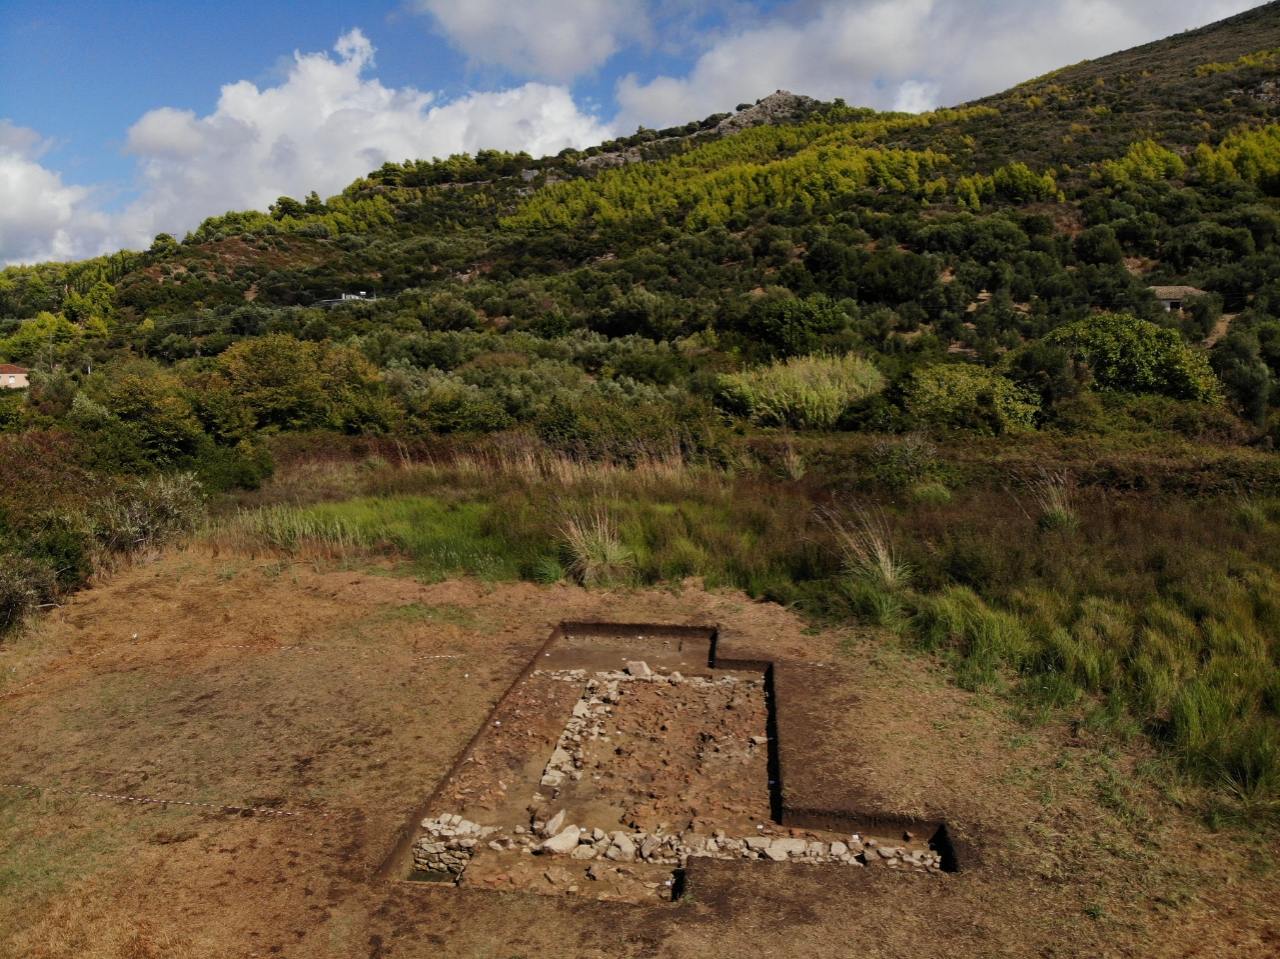 ग्रीस 2 मा Kleidi को पुरातात्विक स्थल मा Poseidon को मन्दिर को खोज